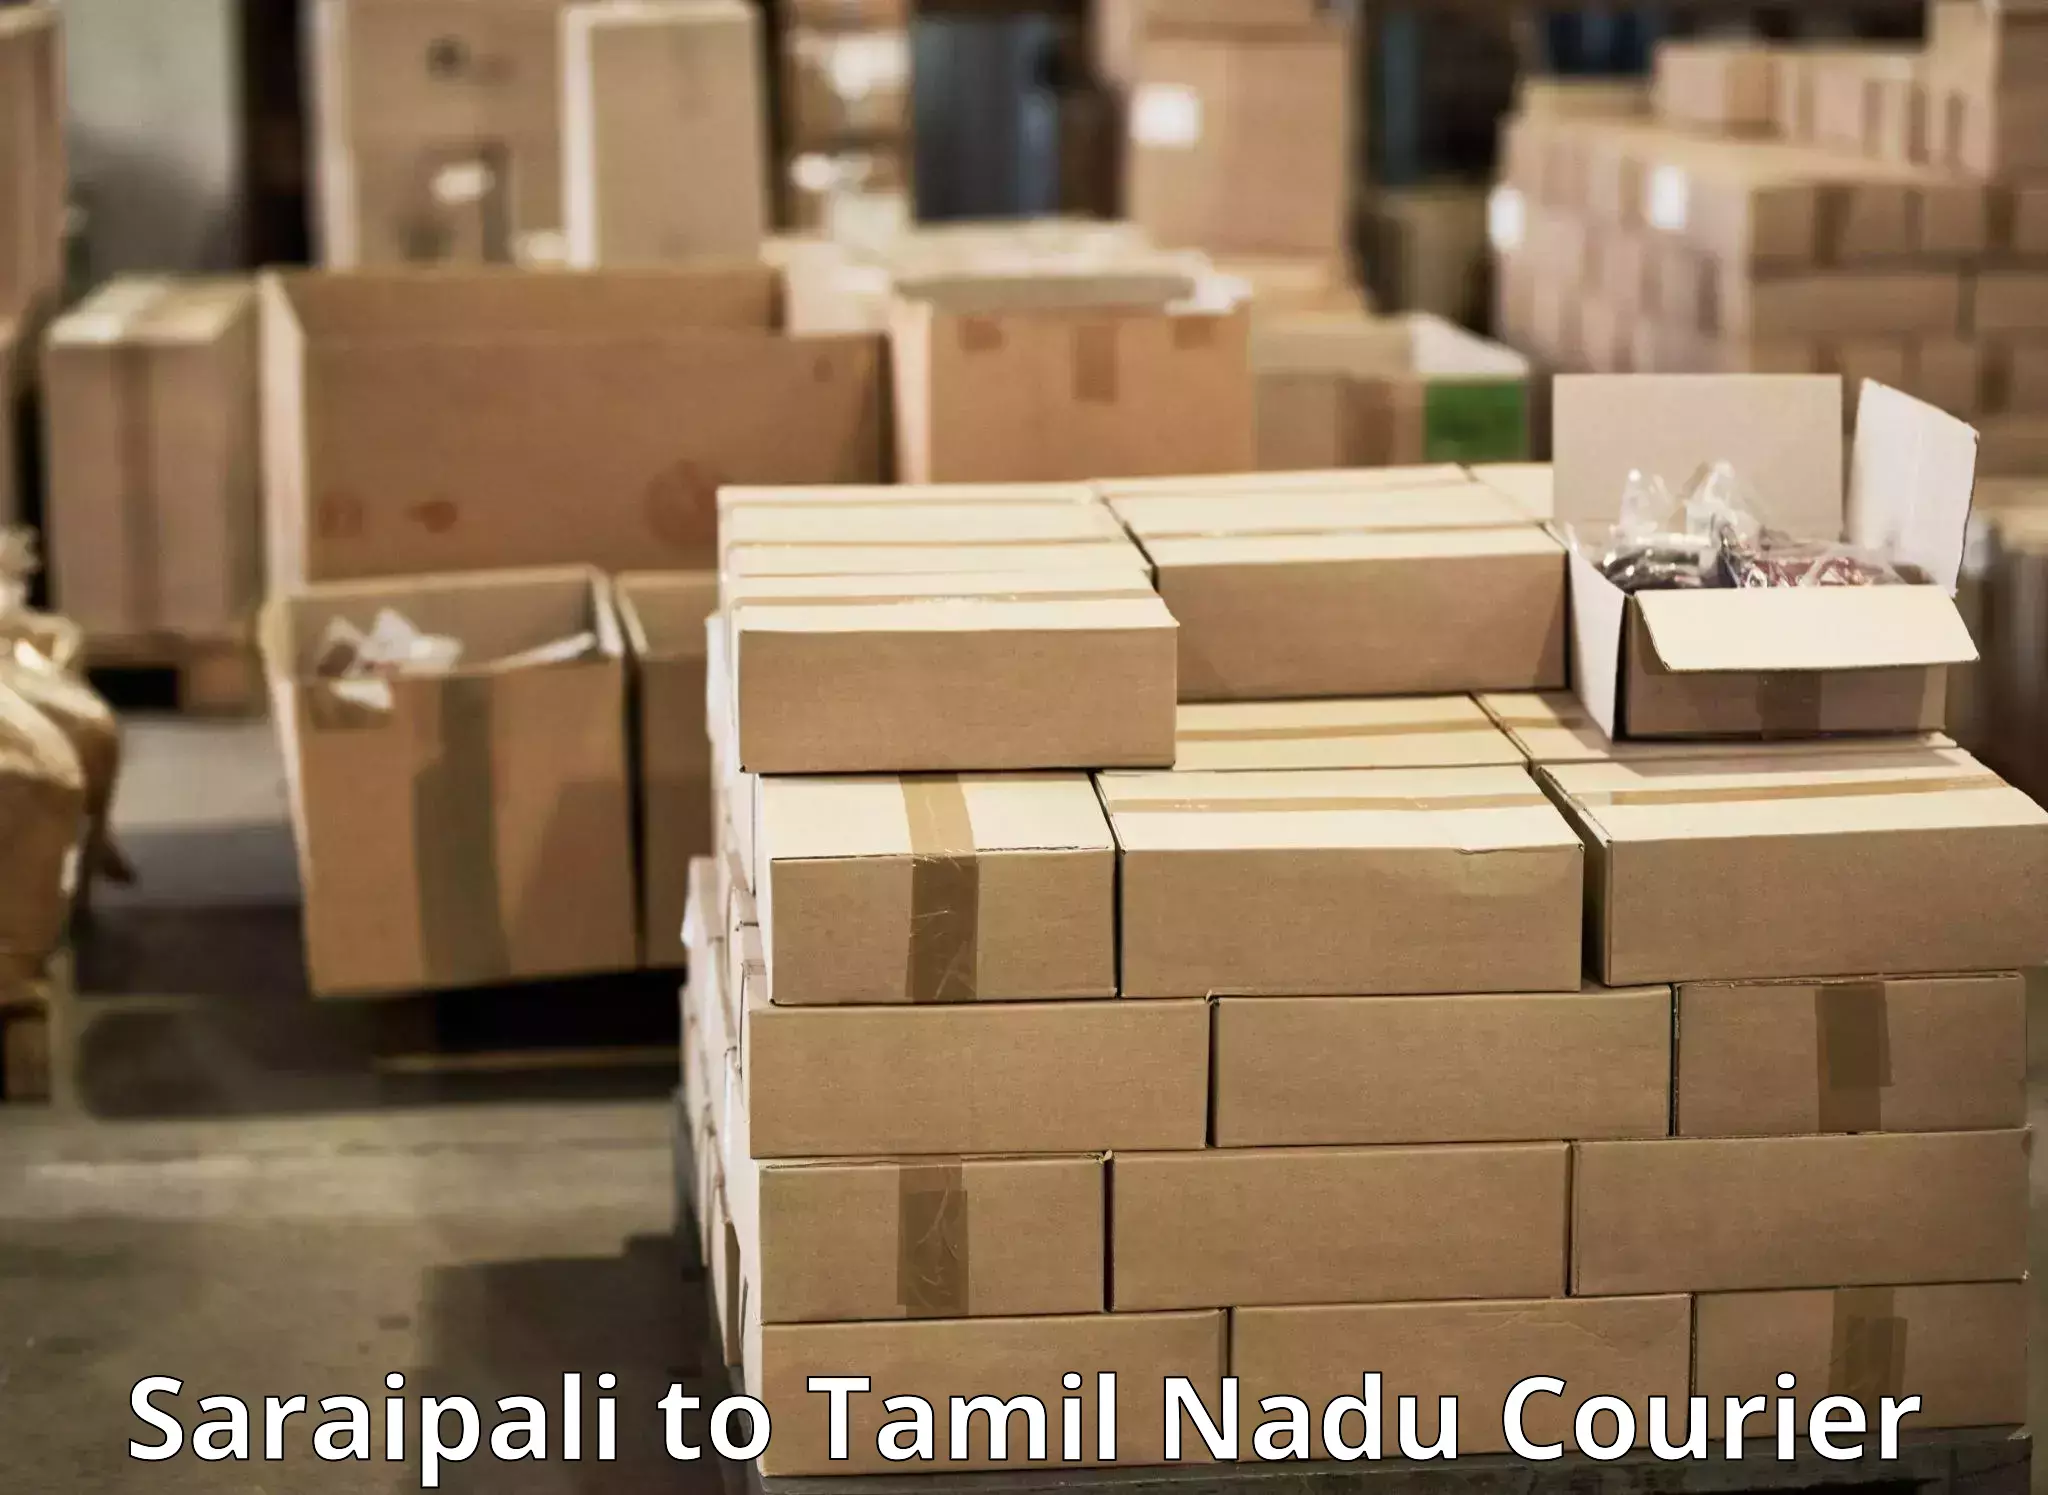 Global courier networks Saraipali to Thirukkattupalli